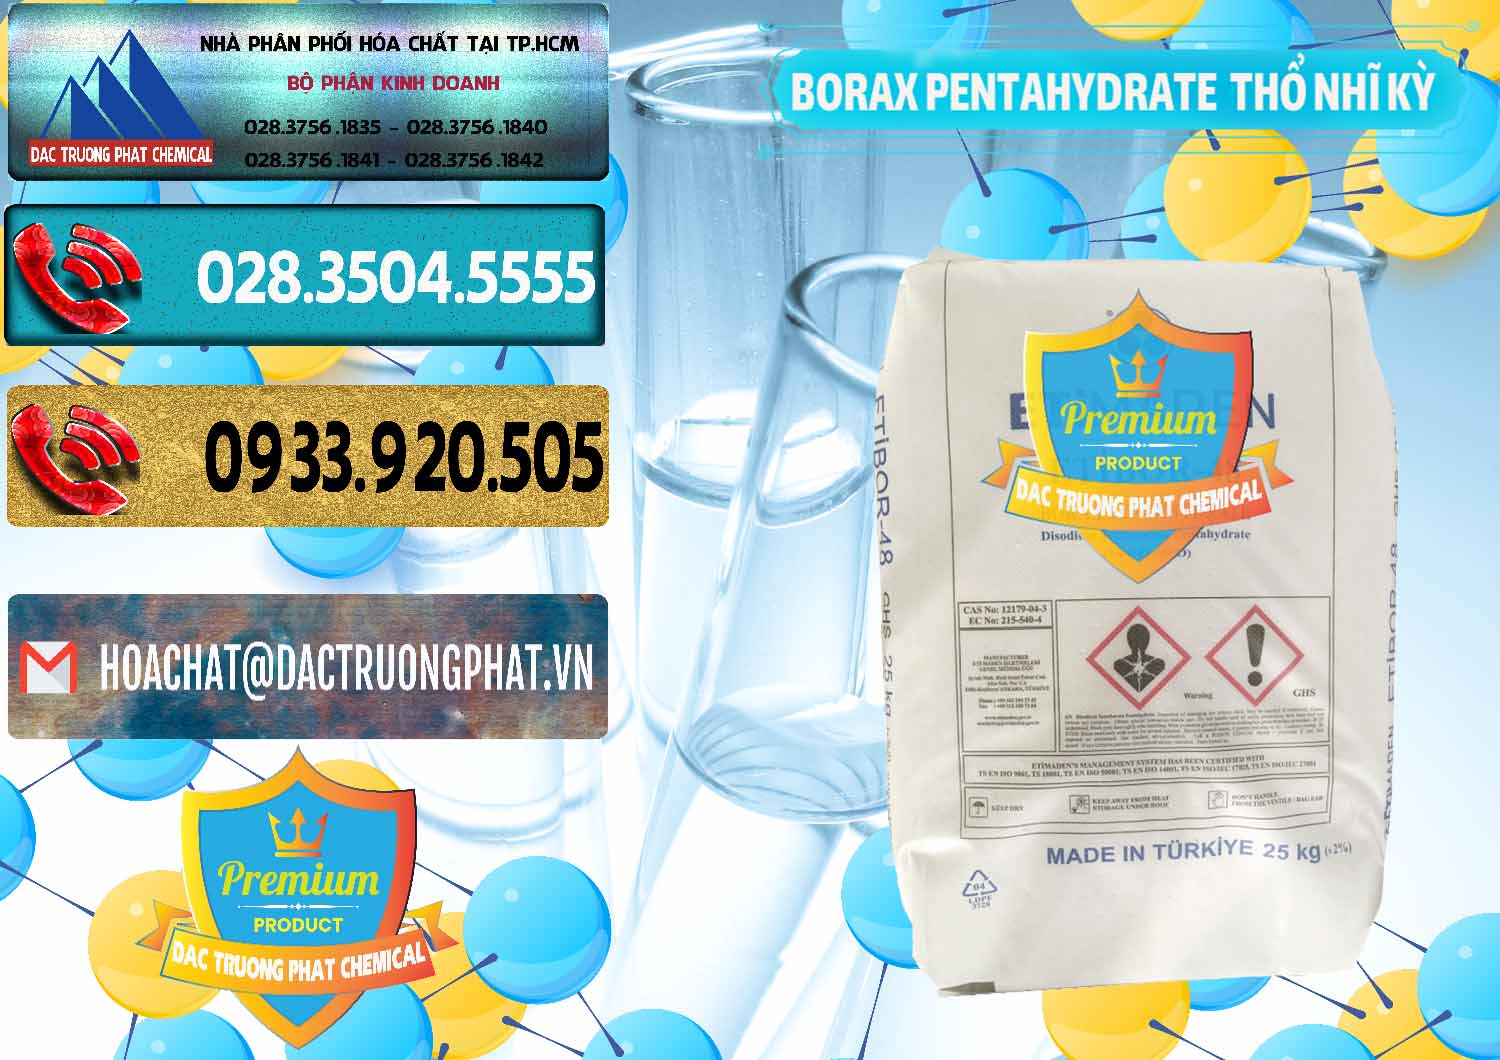 Đơn vị bán - cung ứng Borax Pentahydrate Thổ Nhĩ Kỳ Turkey - 0431 - Đơn vị chuyên cung cấp _ kinh doanh hóa chất tại TP.HCM - hoachatdetnhuom.com